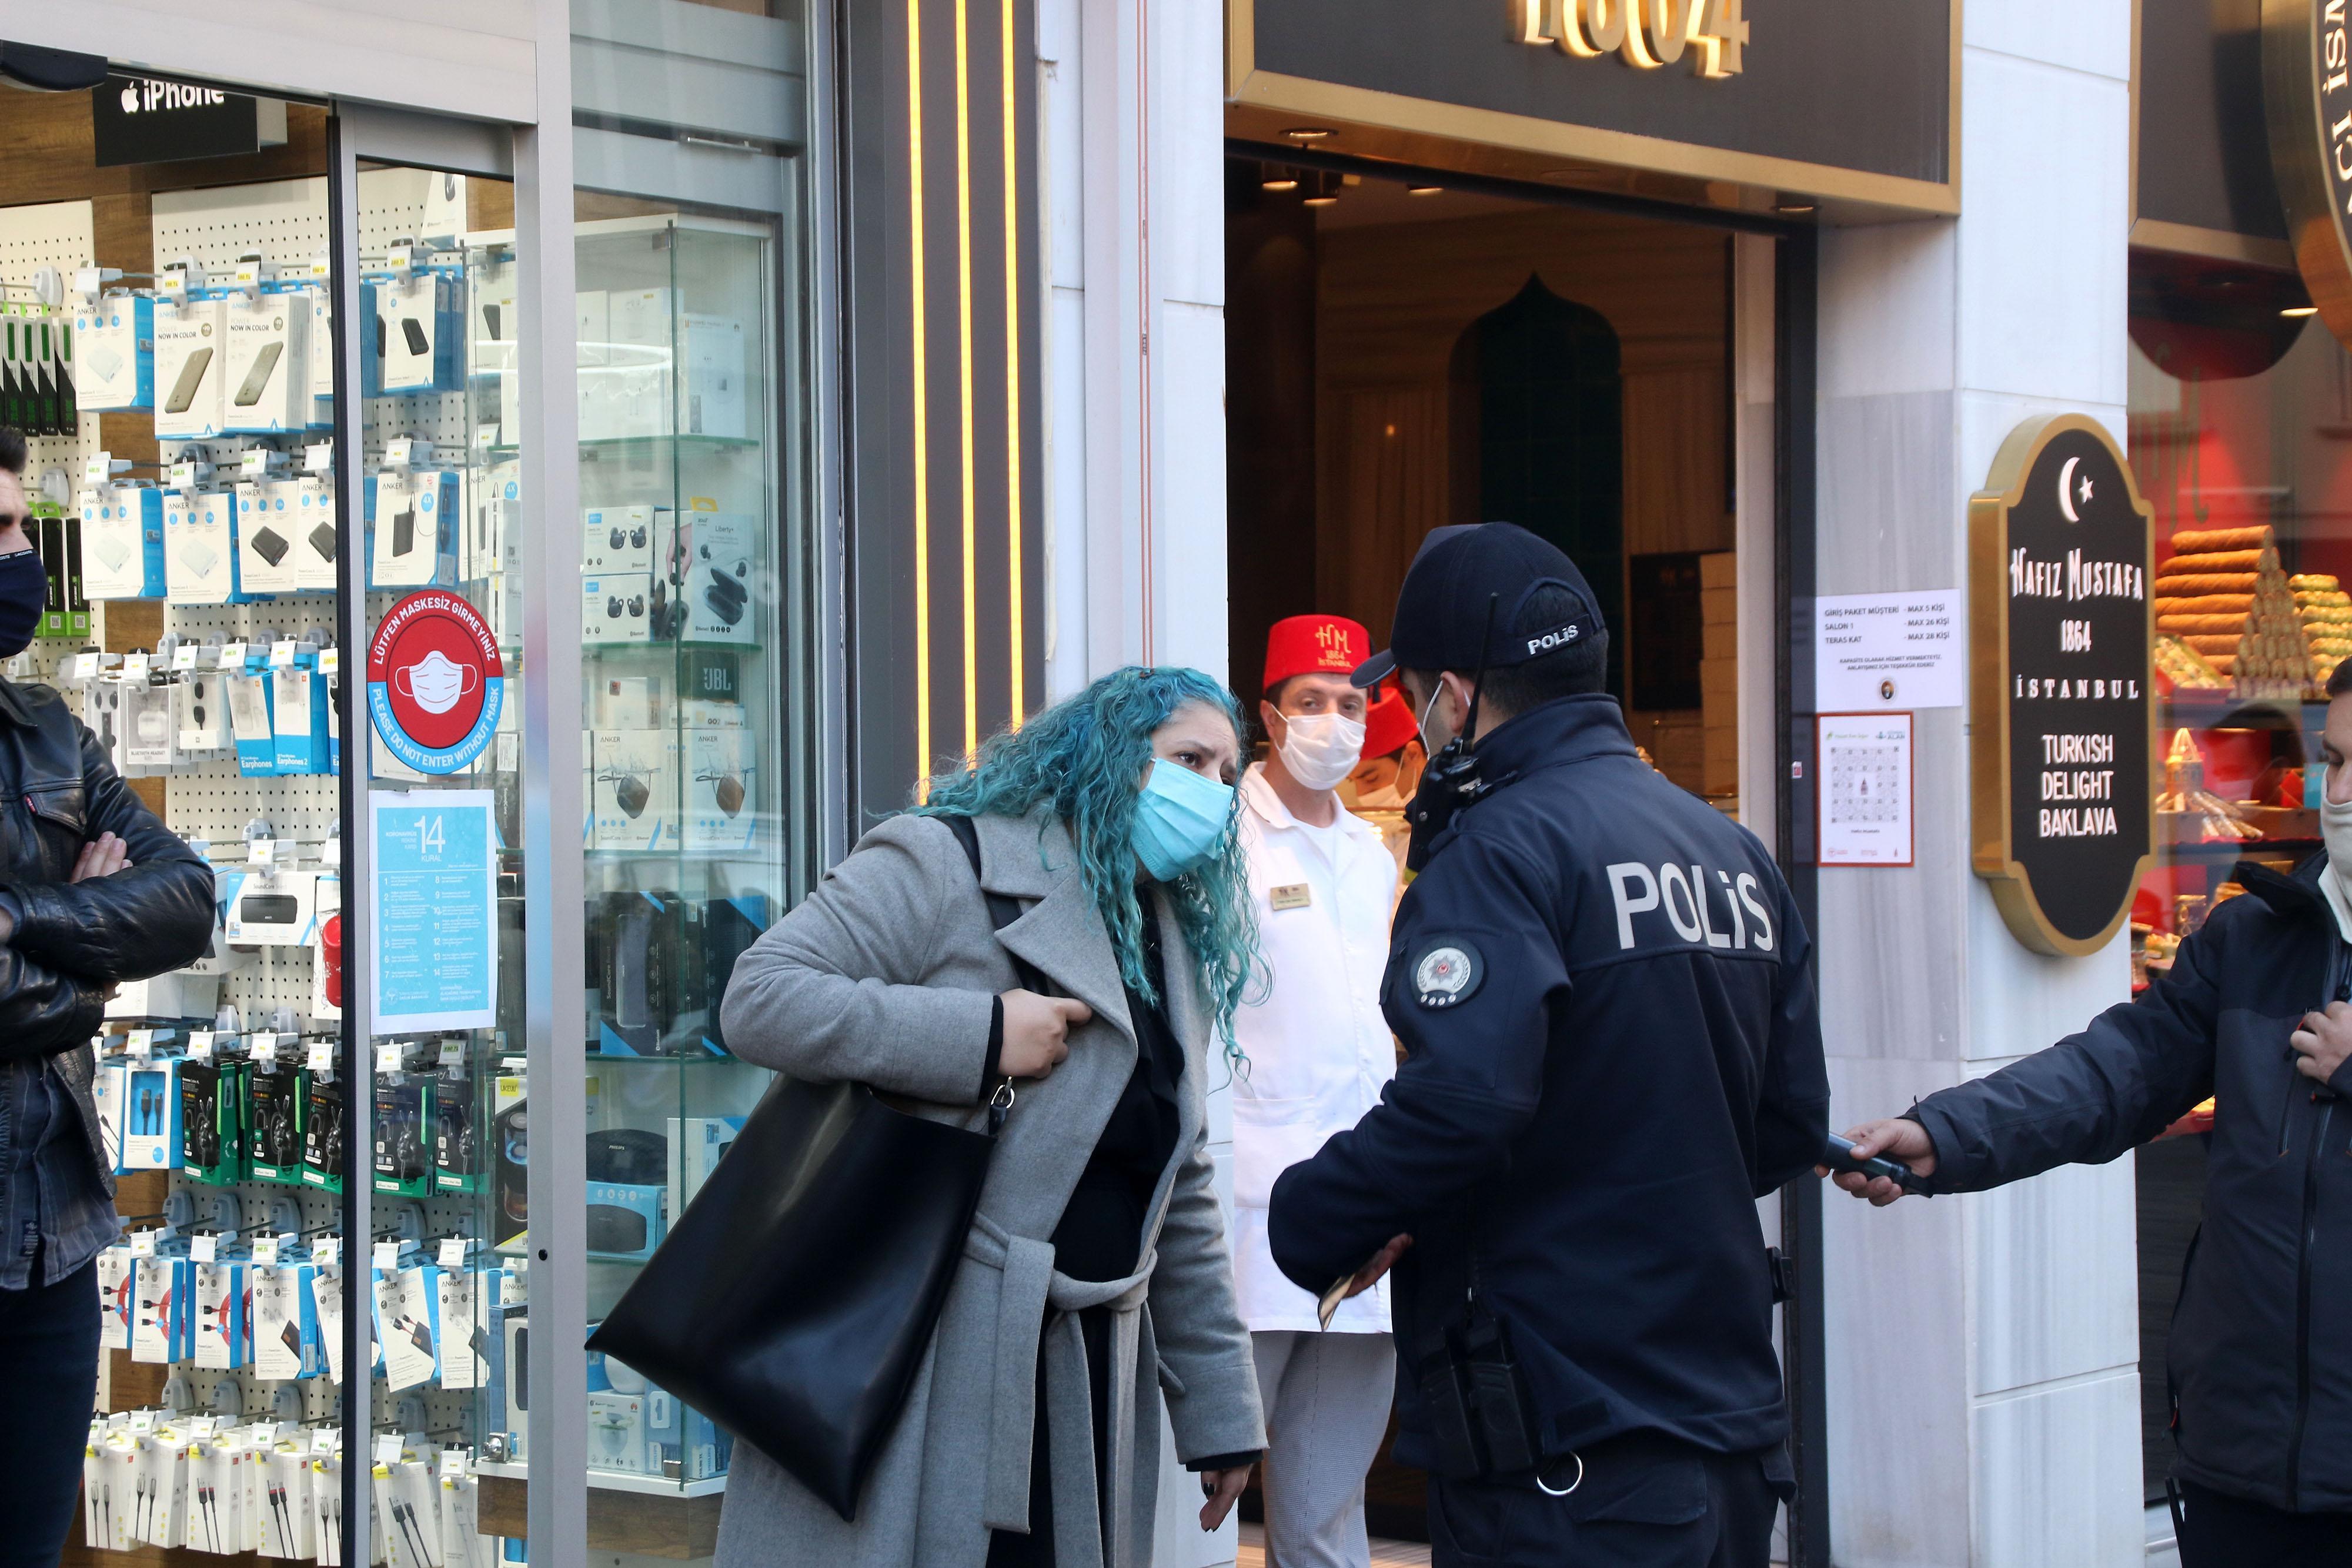 Taksimde maske takmadığı için ceza yazılmak istenen kadın polise zor anlar yaşattı